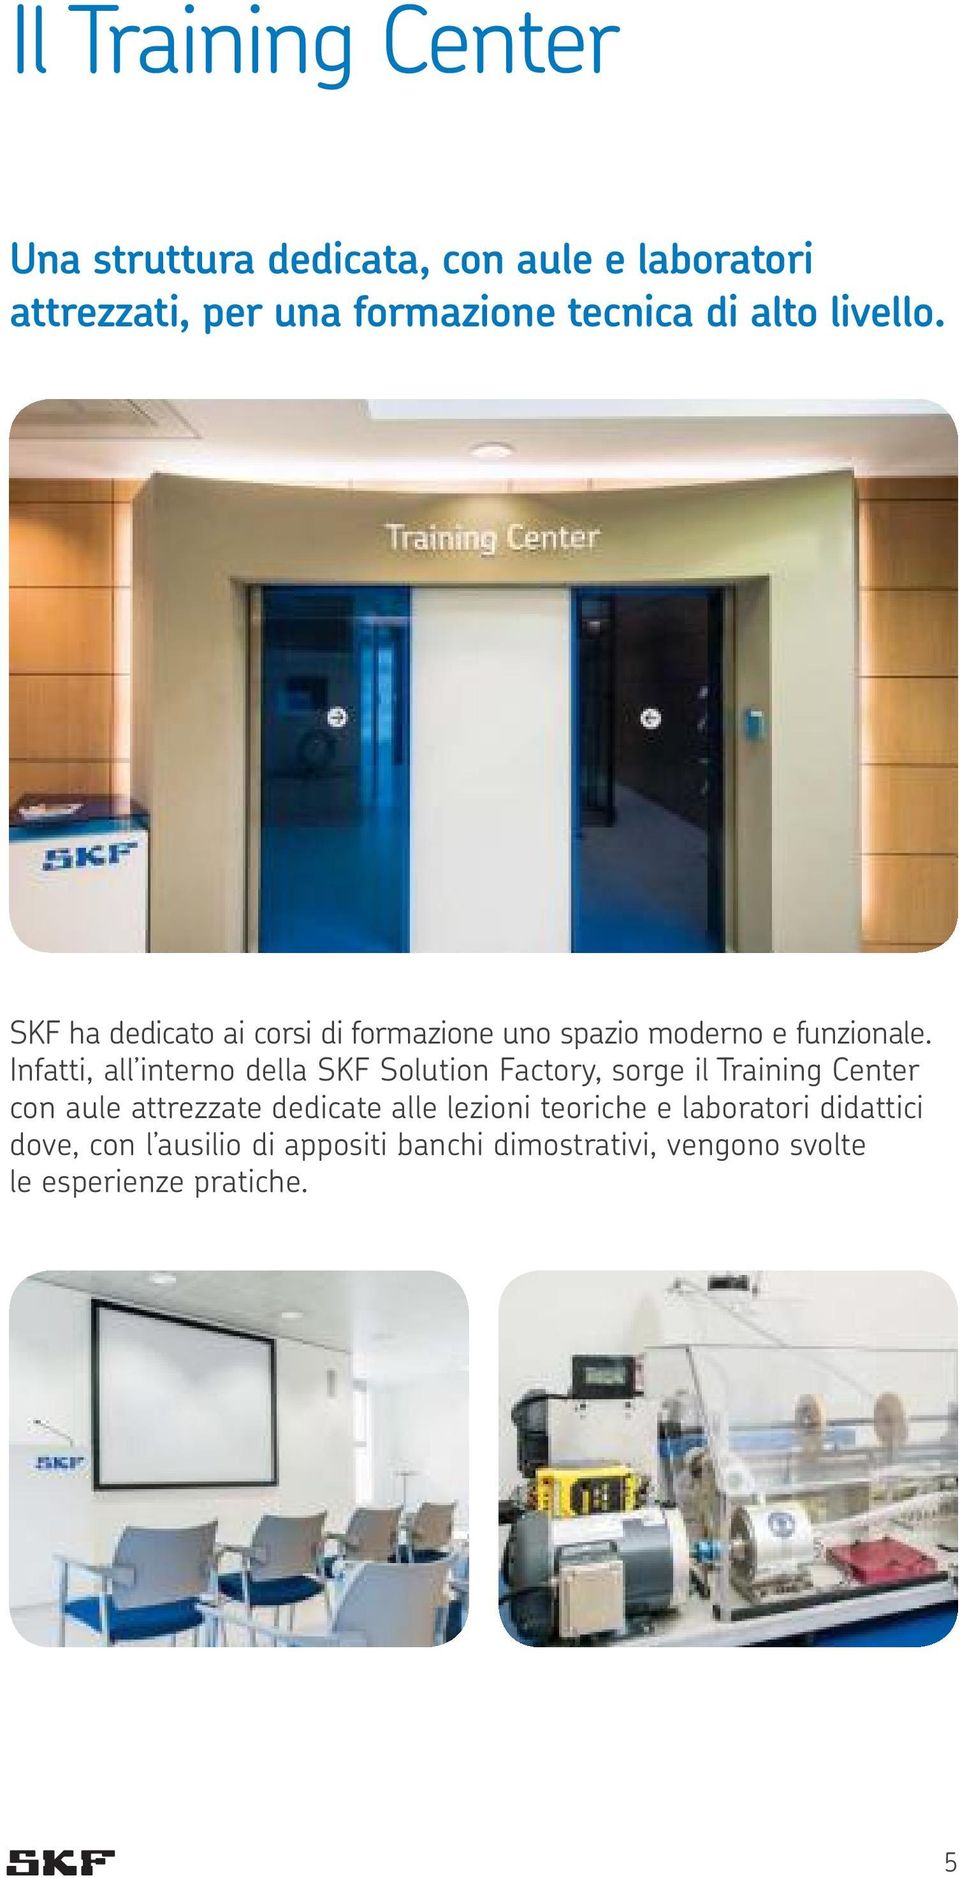 Infatti, all interno della SKF Solution Factory, sorge il Training Center con aule attrezzate dedicate alle